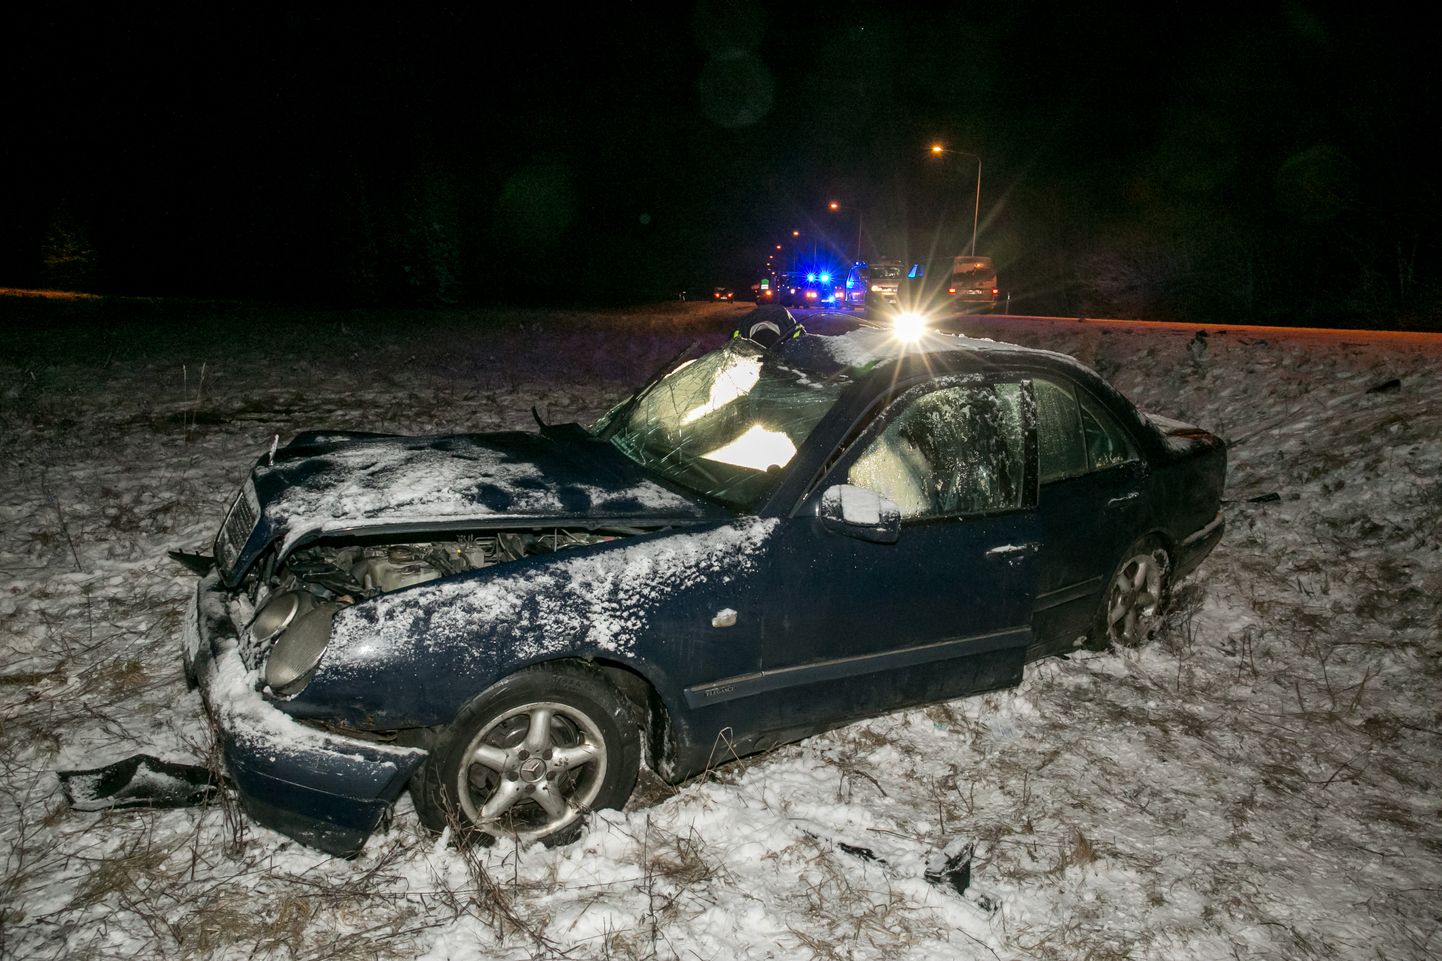 Eile kella 21.41 ajal toimus Tallinna-Pärnu-Ikla maantee 101. kilomeetril raske liiklusõnnetus, kus kokku põrkasid sõiduauto ja veoauto. Esialgsetel andmetel kaotas Tallinnast Pärnu poole liikunud sõiduauto Mercedes-Benz juhitavuse, kaldus vastassuunavööndisse ja sõitis parema küljega ette Pärnust Tallinna poole liikunud veoautole Mercedes-Benz.